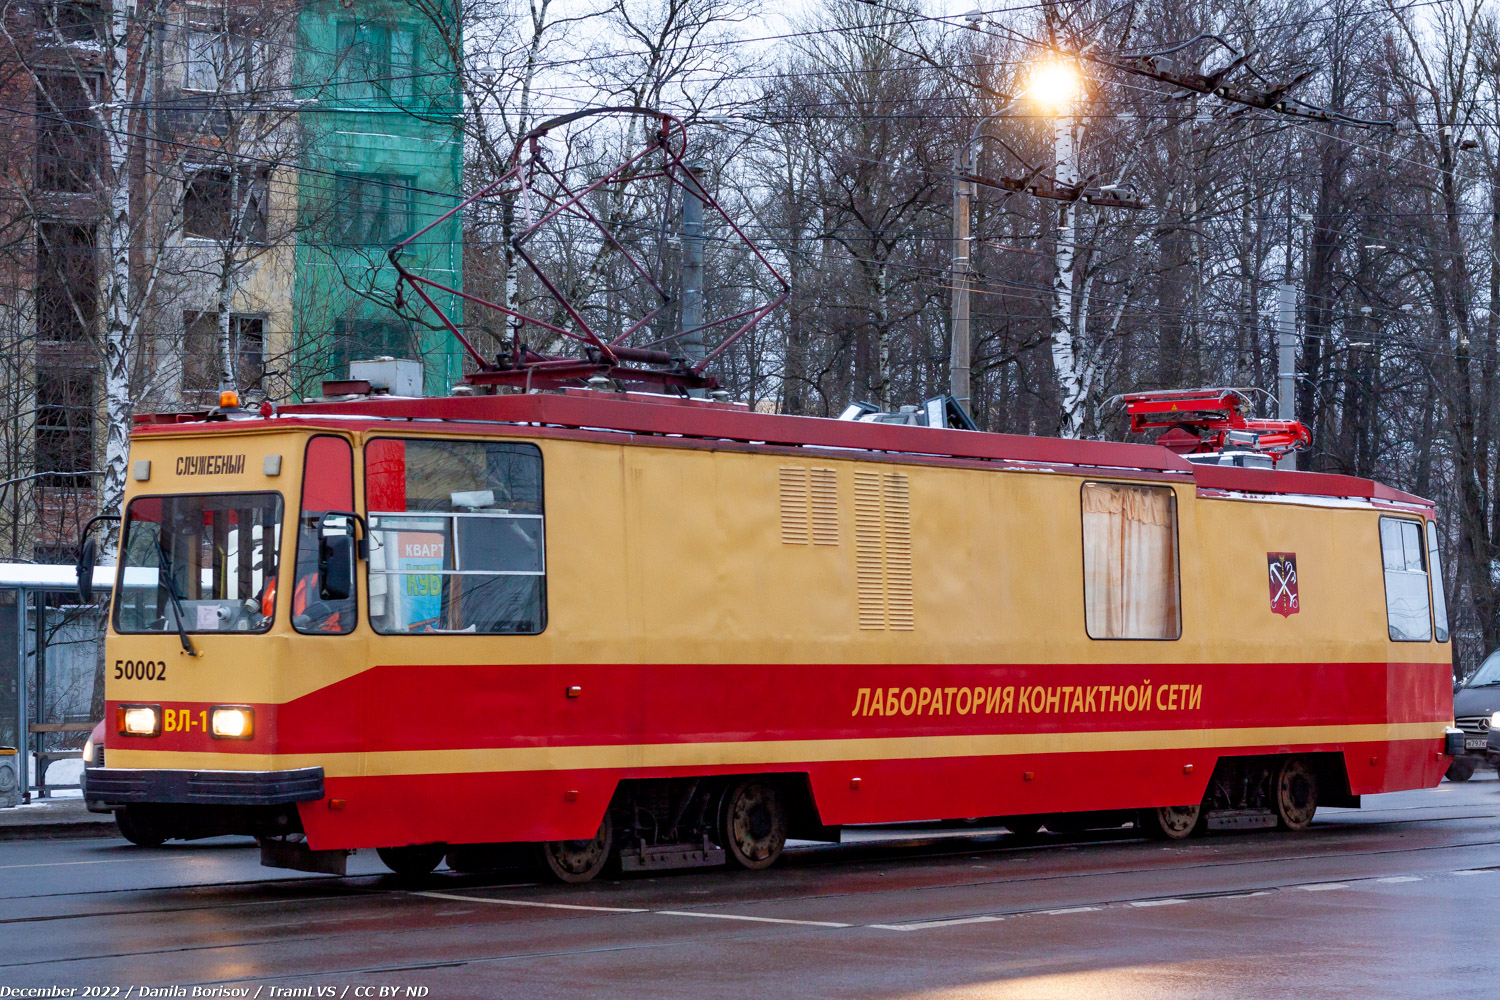 St Petersburg, LM-68M nr. ВЛ-1 (50002)